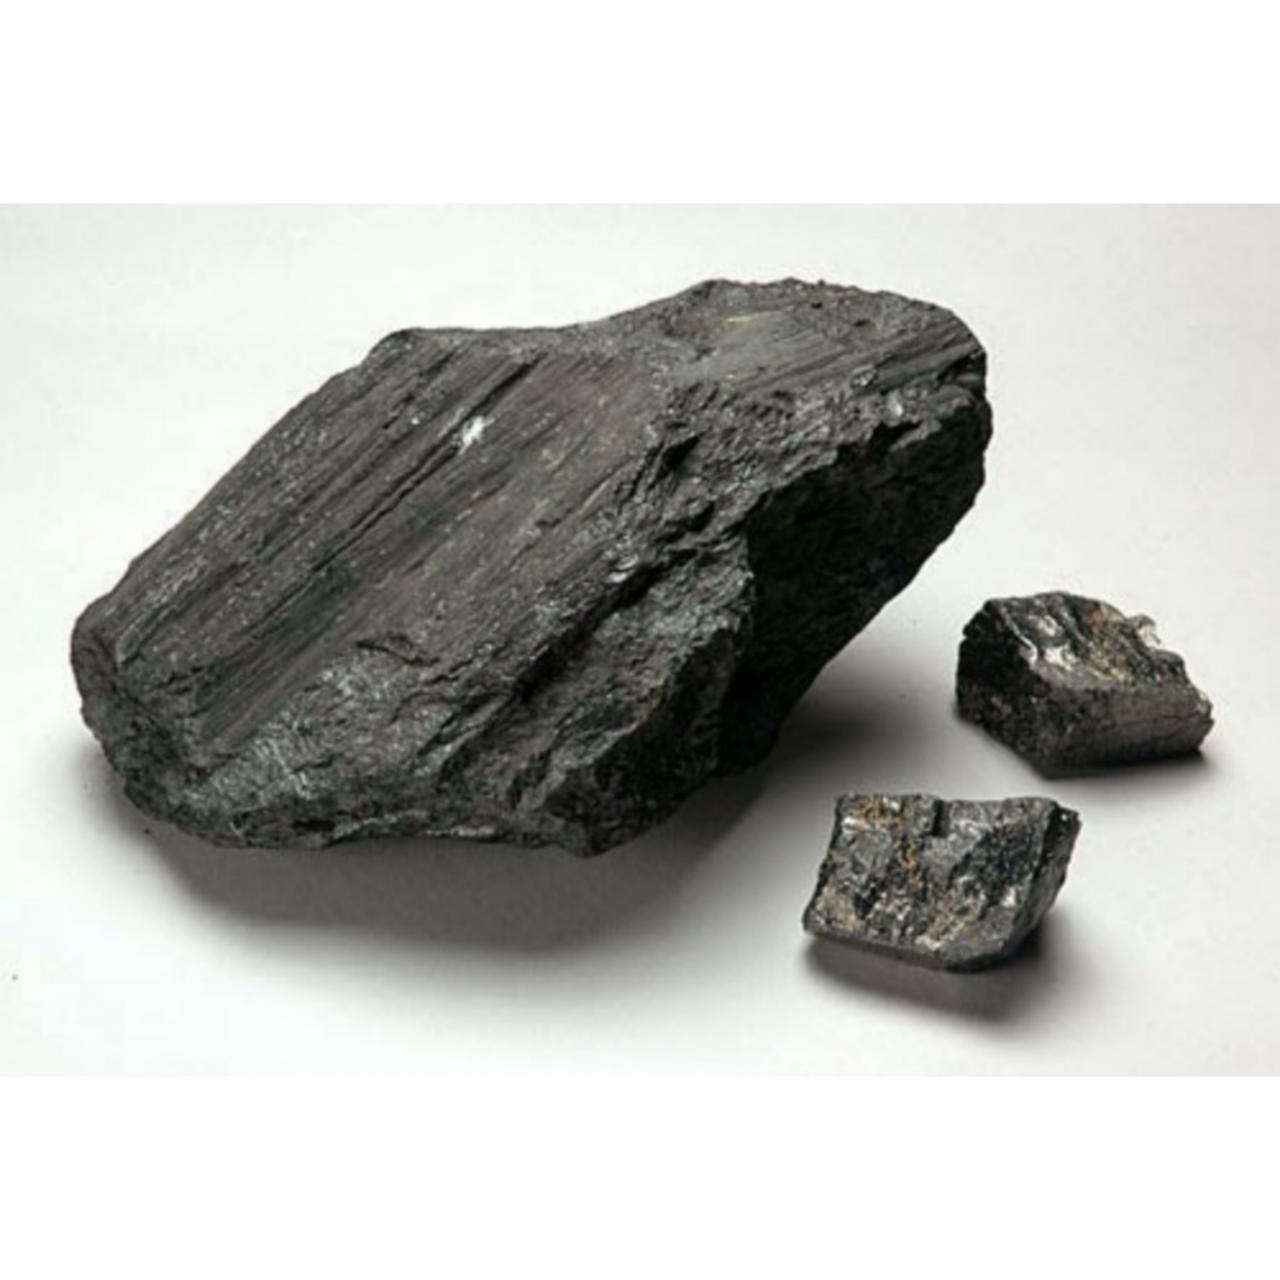 Каменный уголь на урале. Каменный уголь полезное ископаемое. Каменный уголь антрацит. Уголь бурый каменный антрацит. Уголь битуминозный антрацит каменный.